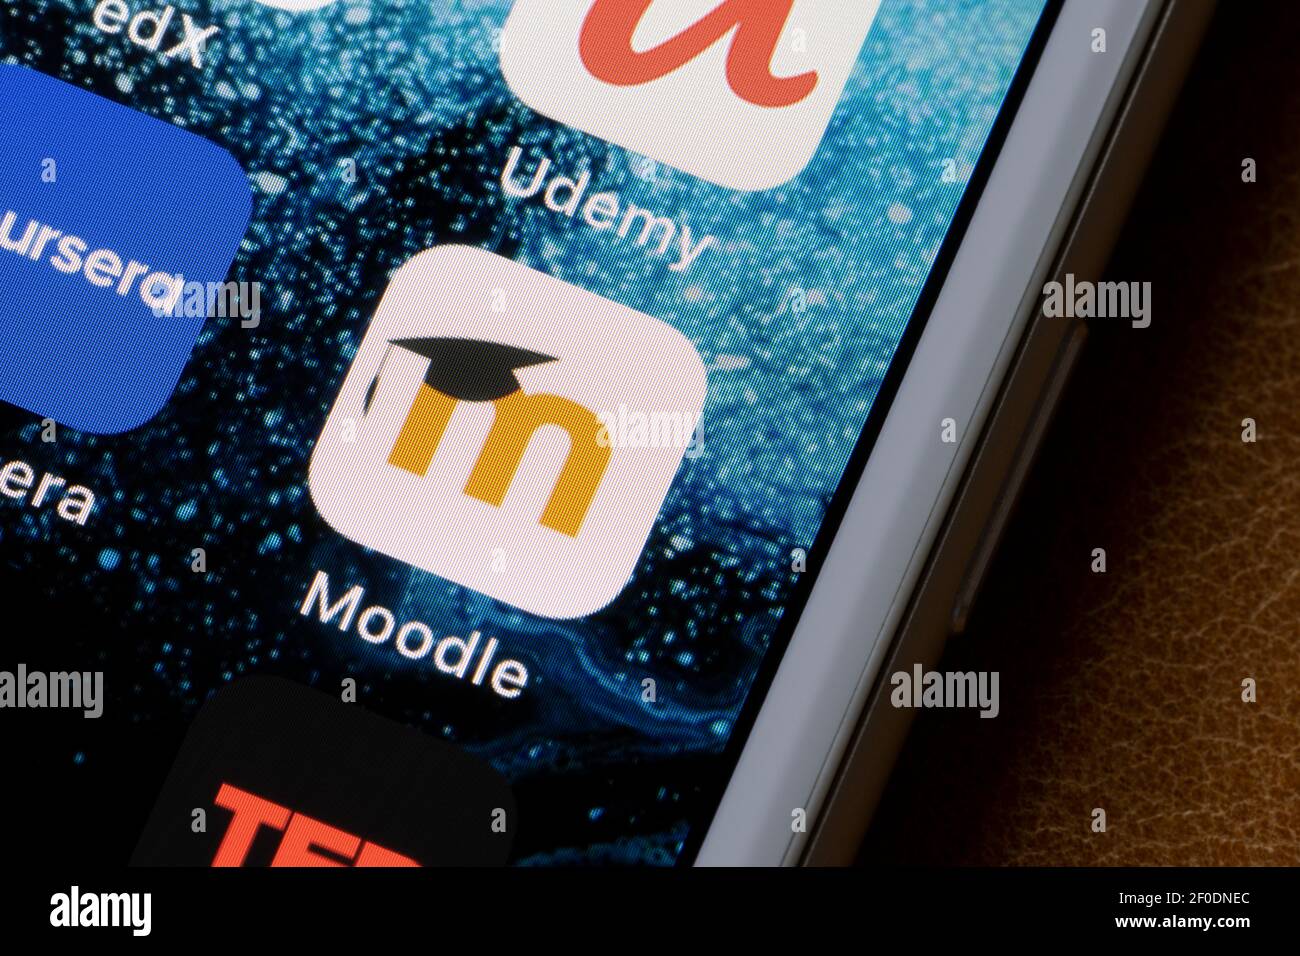 L'icône de l'application Moodle s'affiche sur un iPhone. Moodle est une plate-forme d'apprentissage ou un système de gestion de cours (CMS) - un logiciel libre gratuit. Banque D'Images